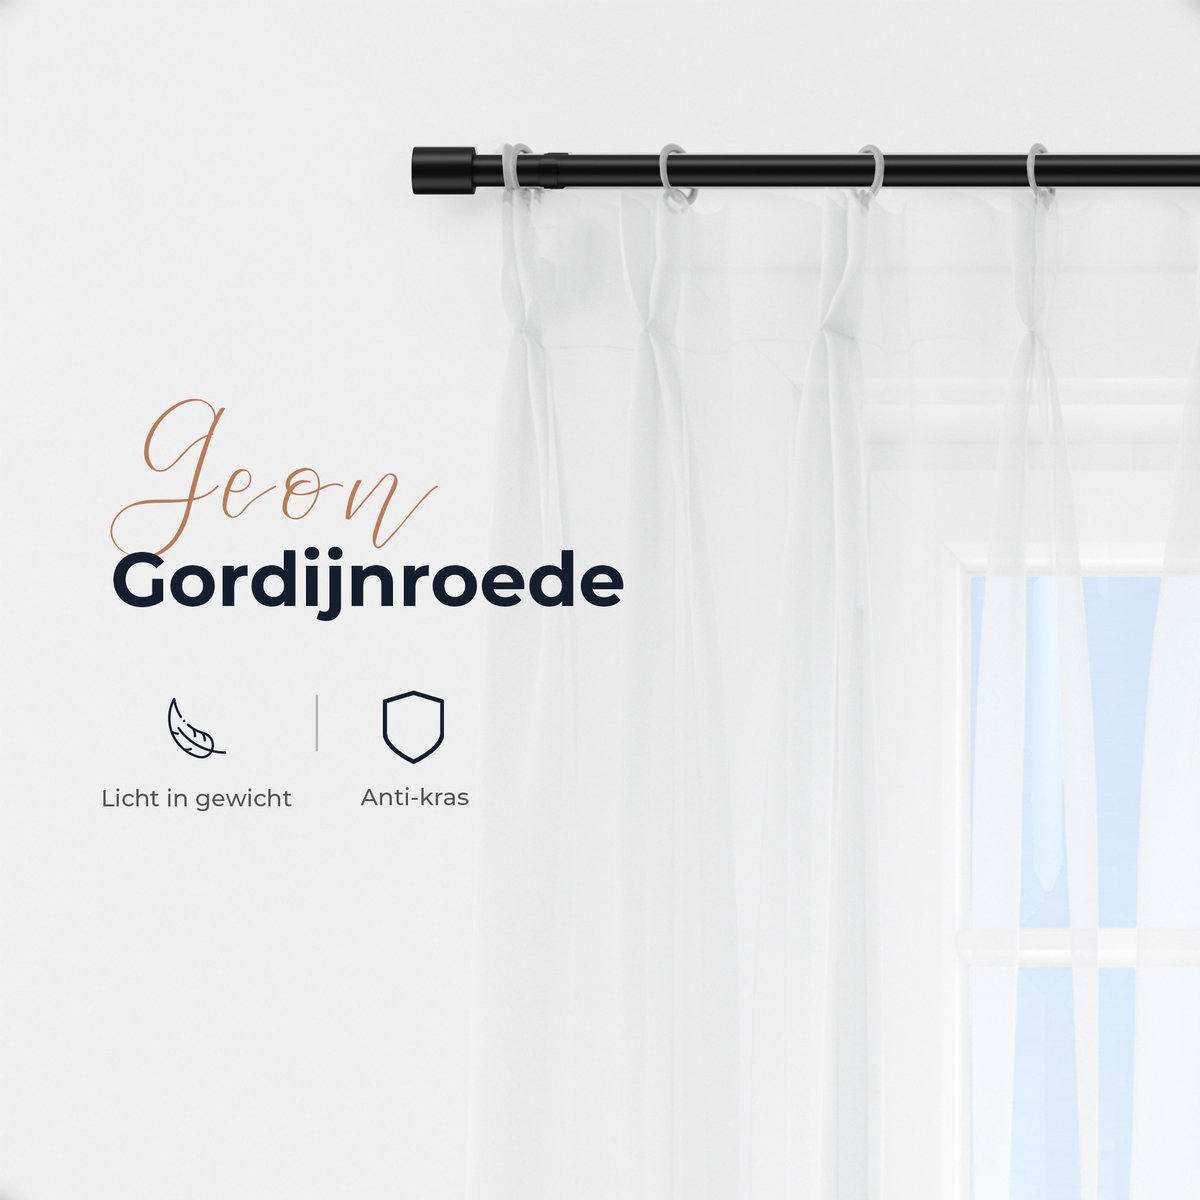 GEON - Gordijnroede - 183-366 cm - Gordijnroede uitschuifbaar - Gordijnrails  compleet... | bol.com